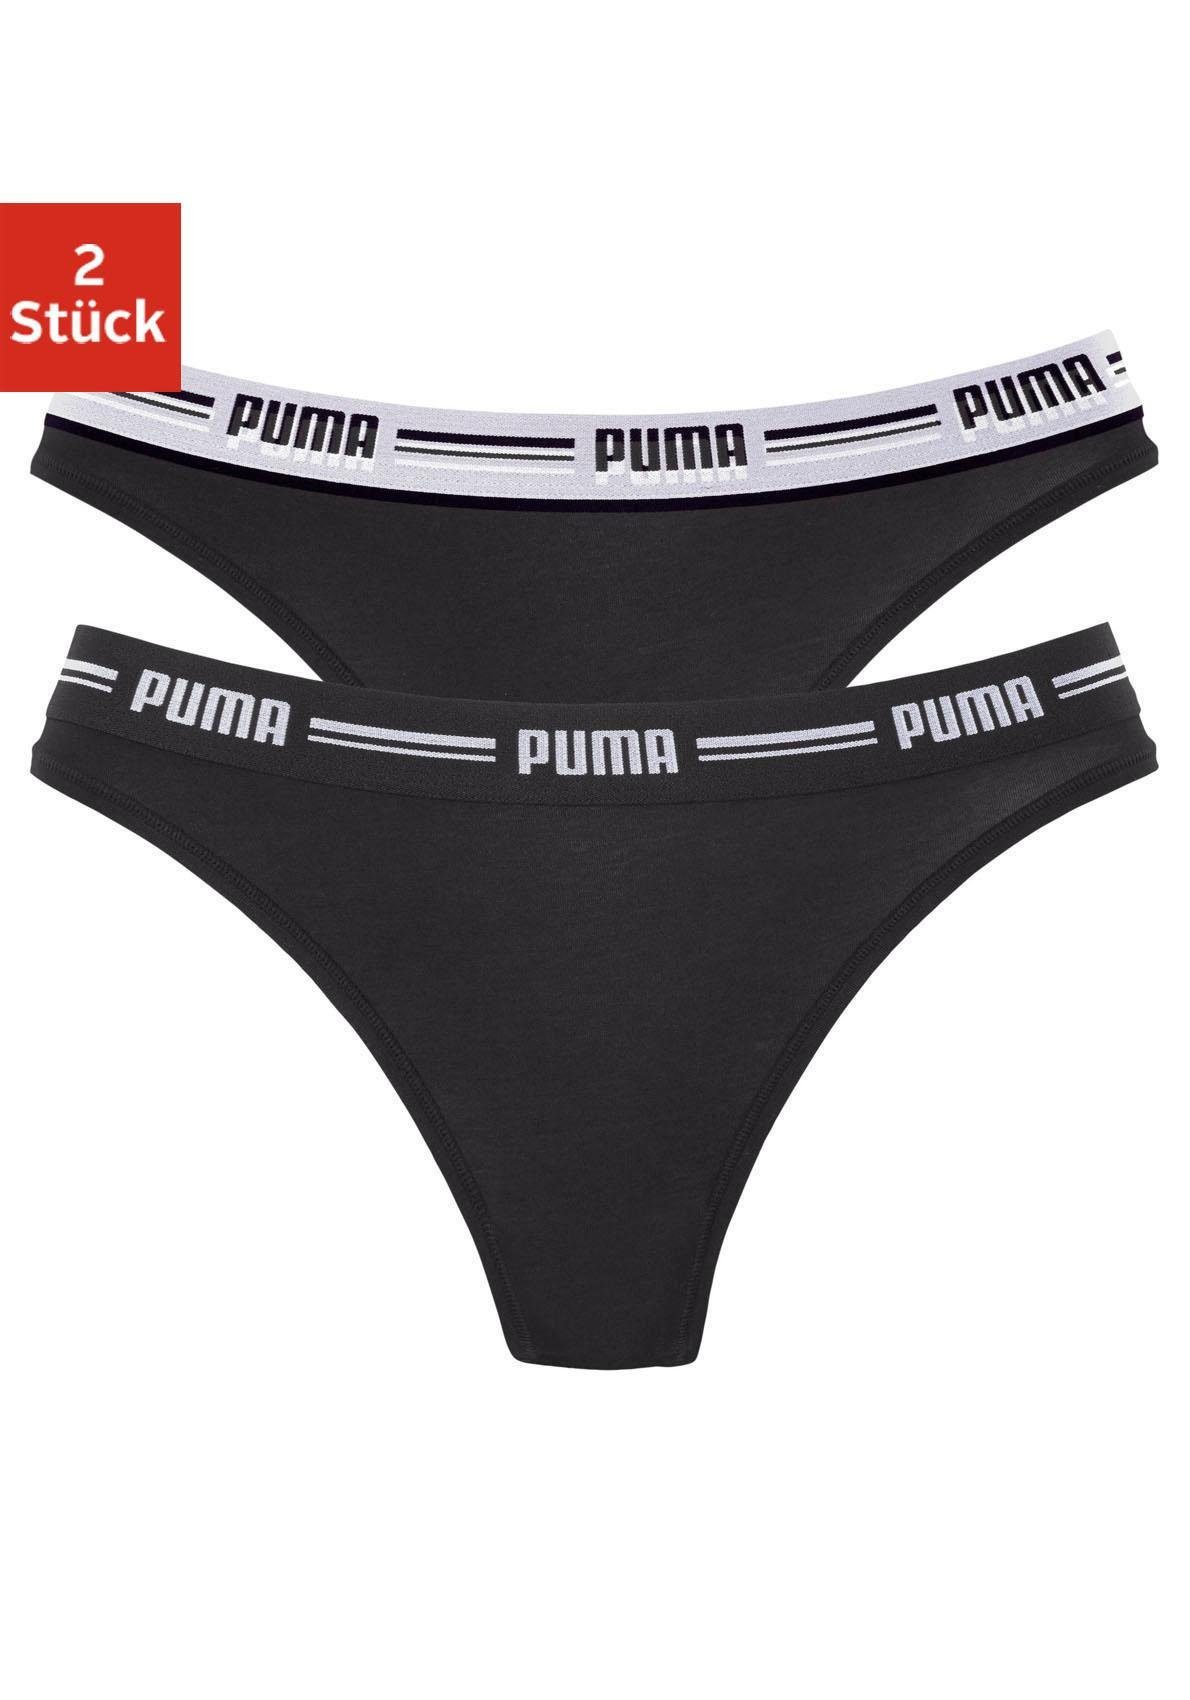 PUMA String »Iconic« (2 Stück), Elastisches Bündchen mit Logoschriftzug  online kaufen | OTTO